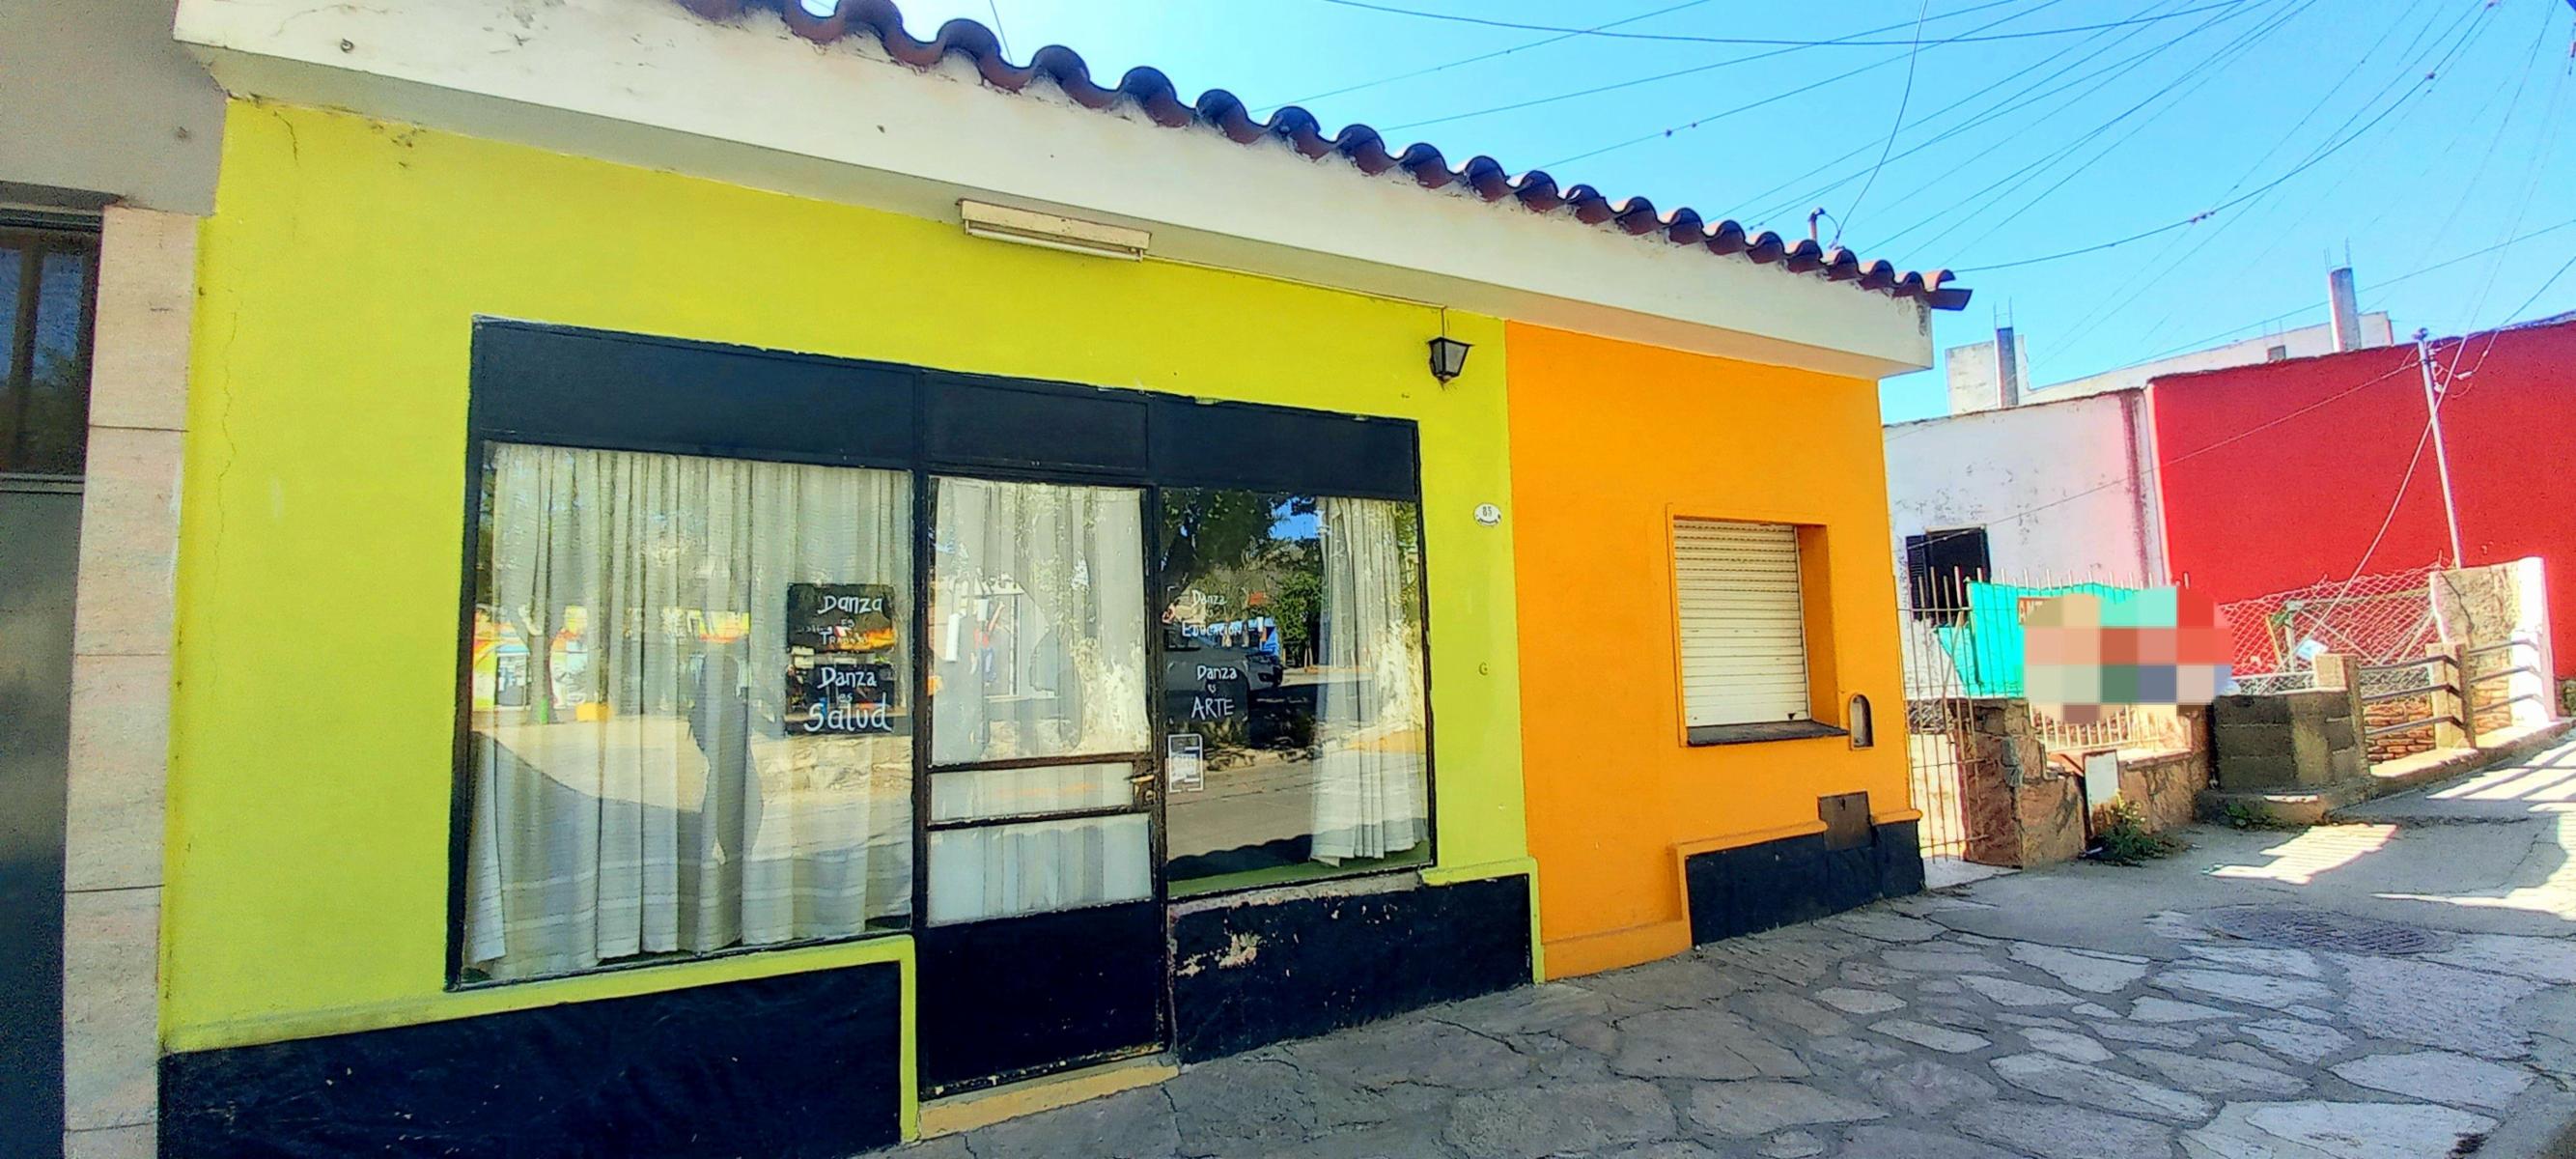 Casa Con Local, Dos entradas Independientes y Parque, Centro de La Falda, C�rdoba